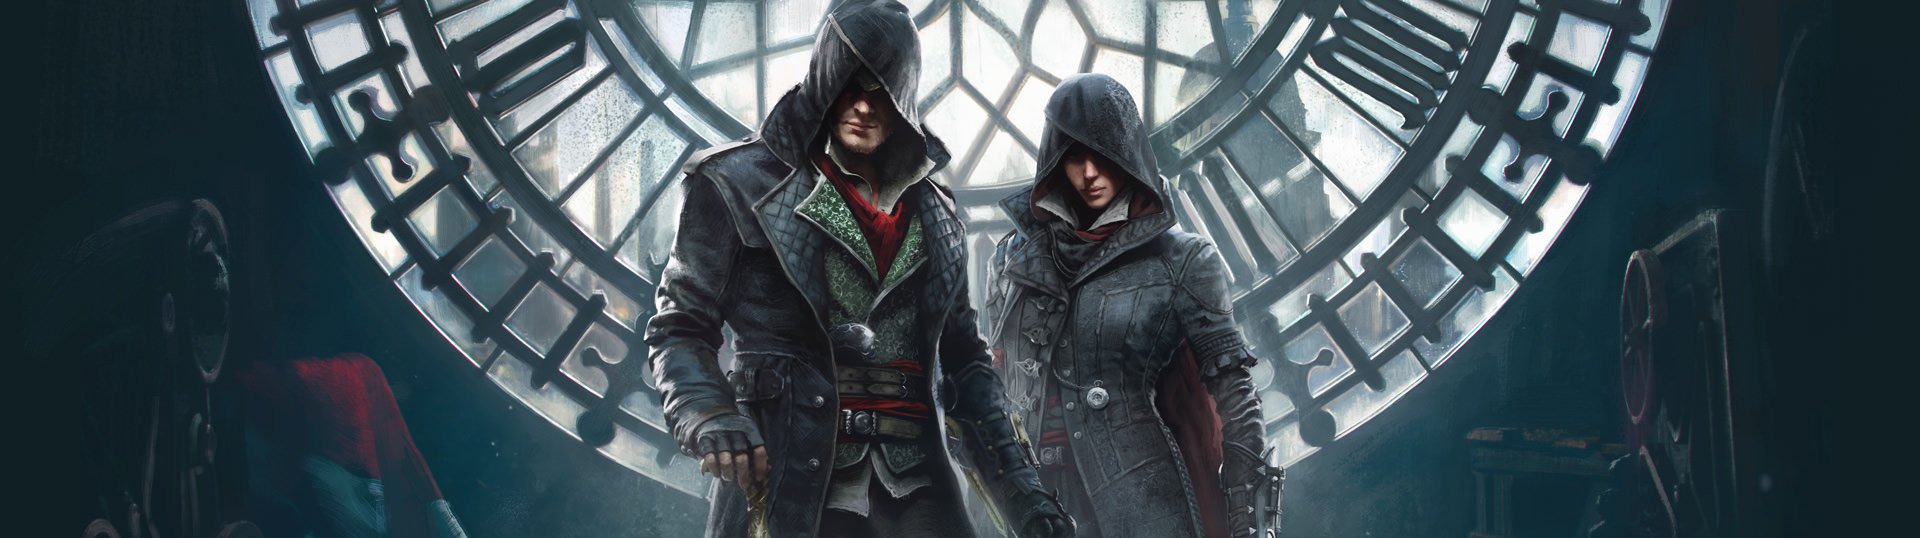 Assassin's Creed Syndicate (Multi) está de graça no PC através do